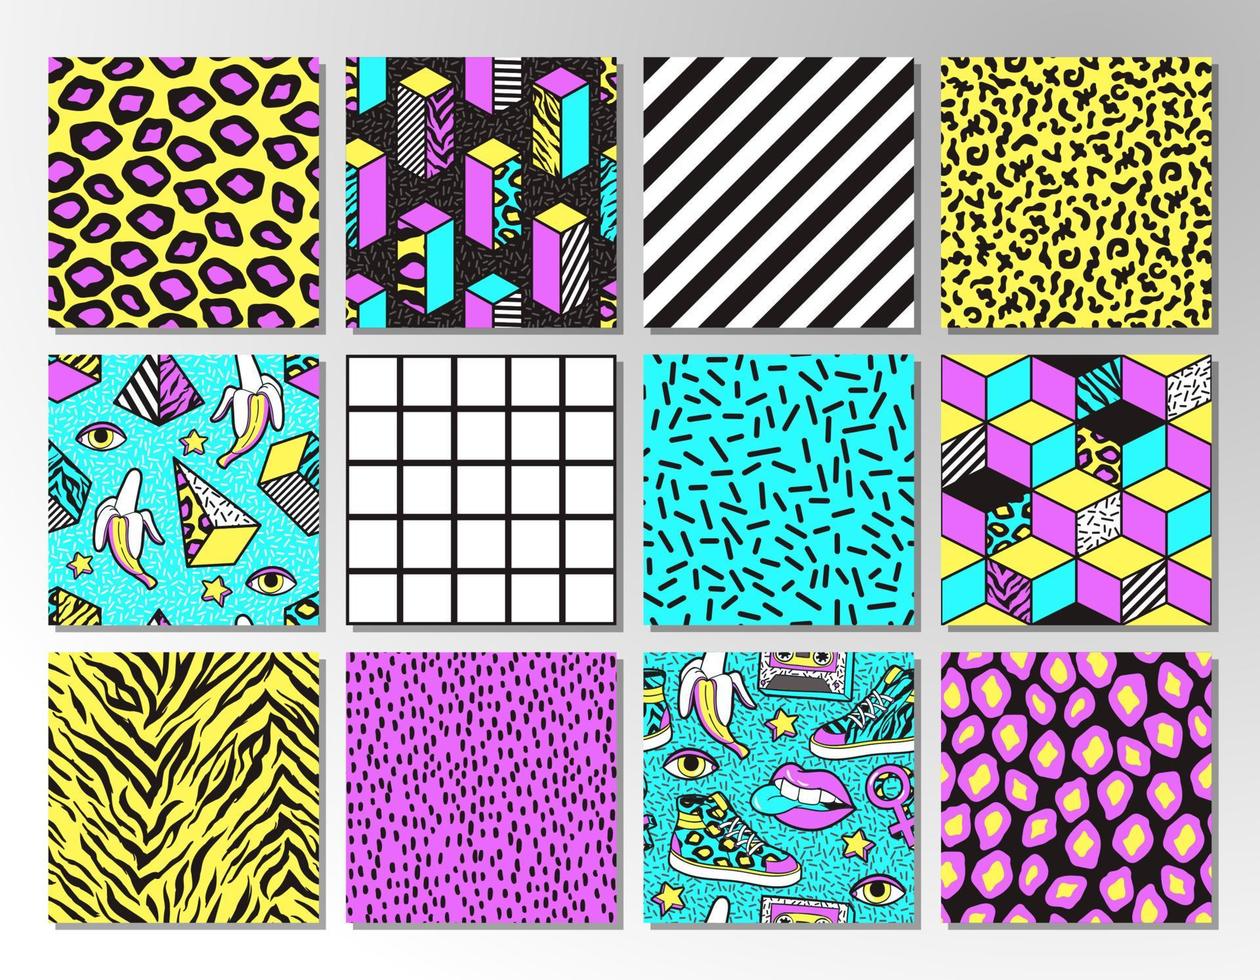 conjunto de patrones impecables en estilo memphis de los años 80-90. vector